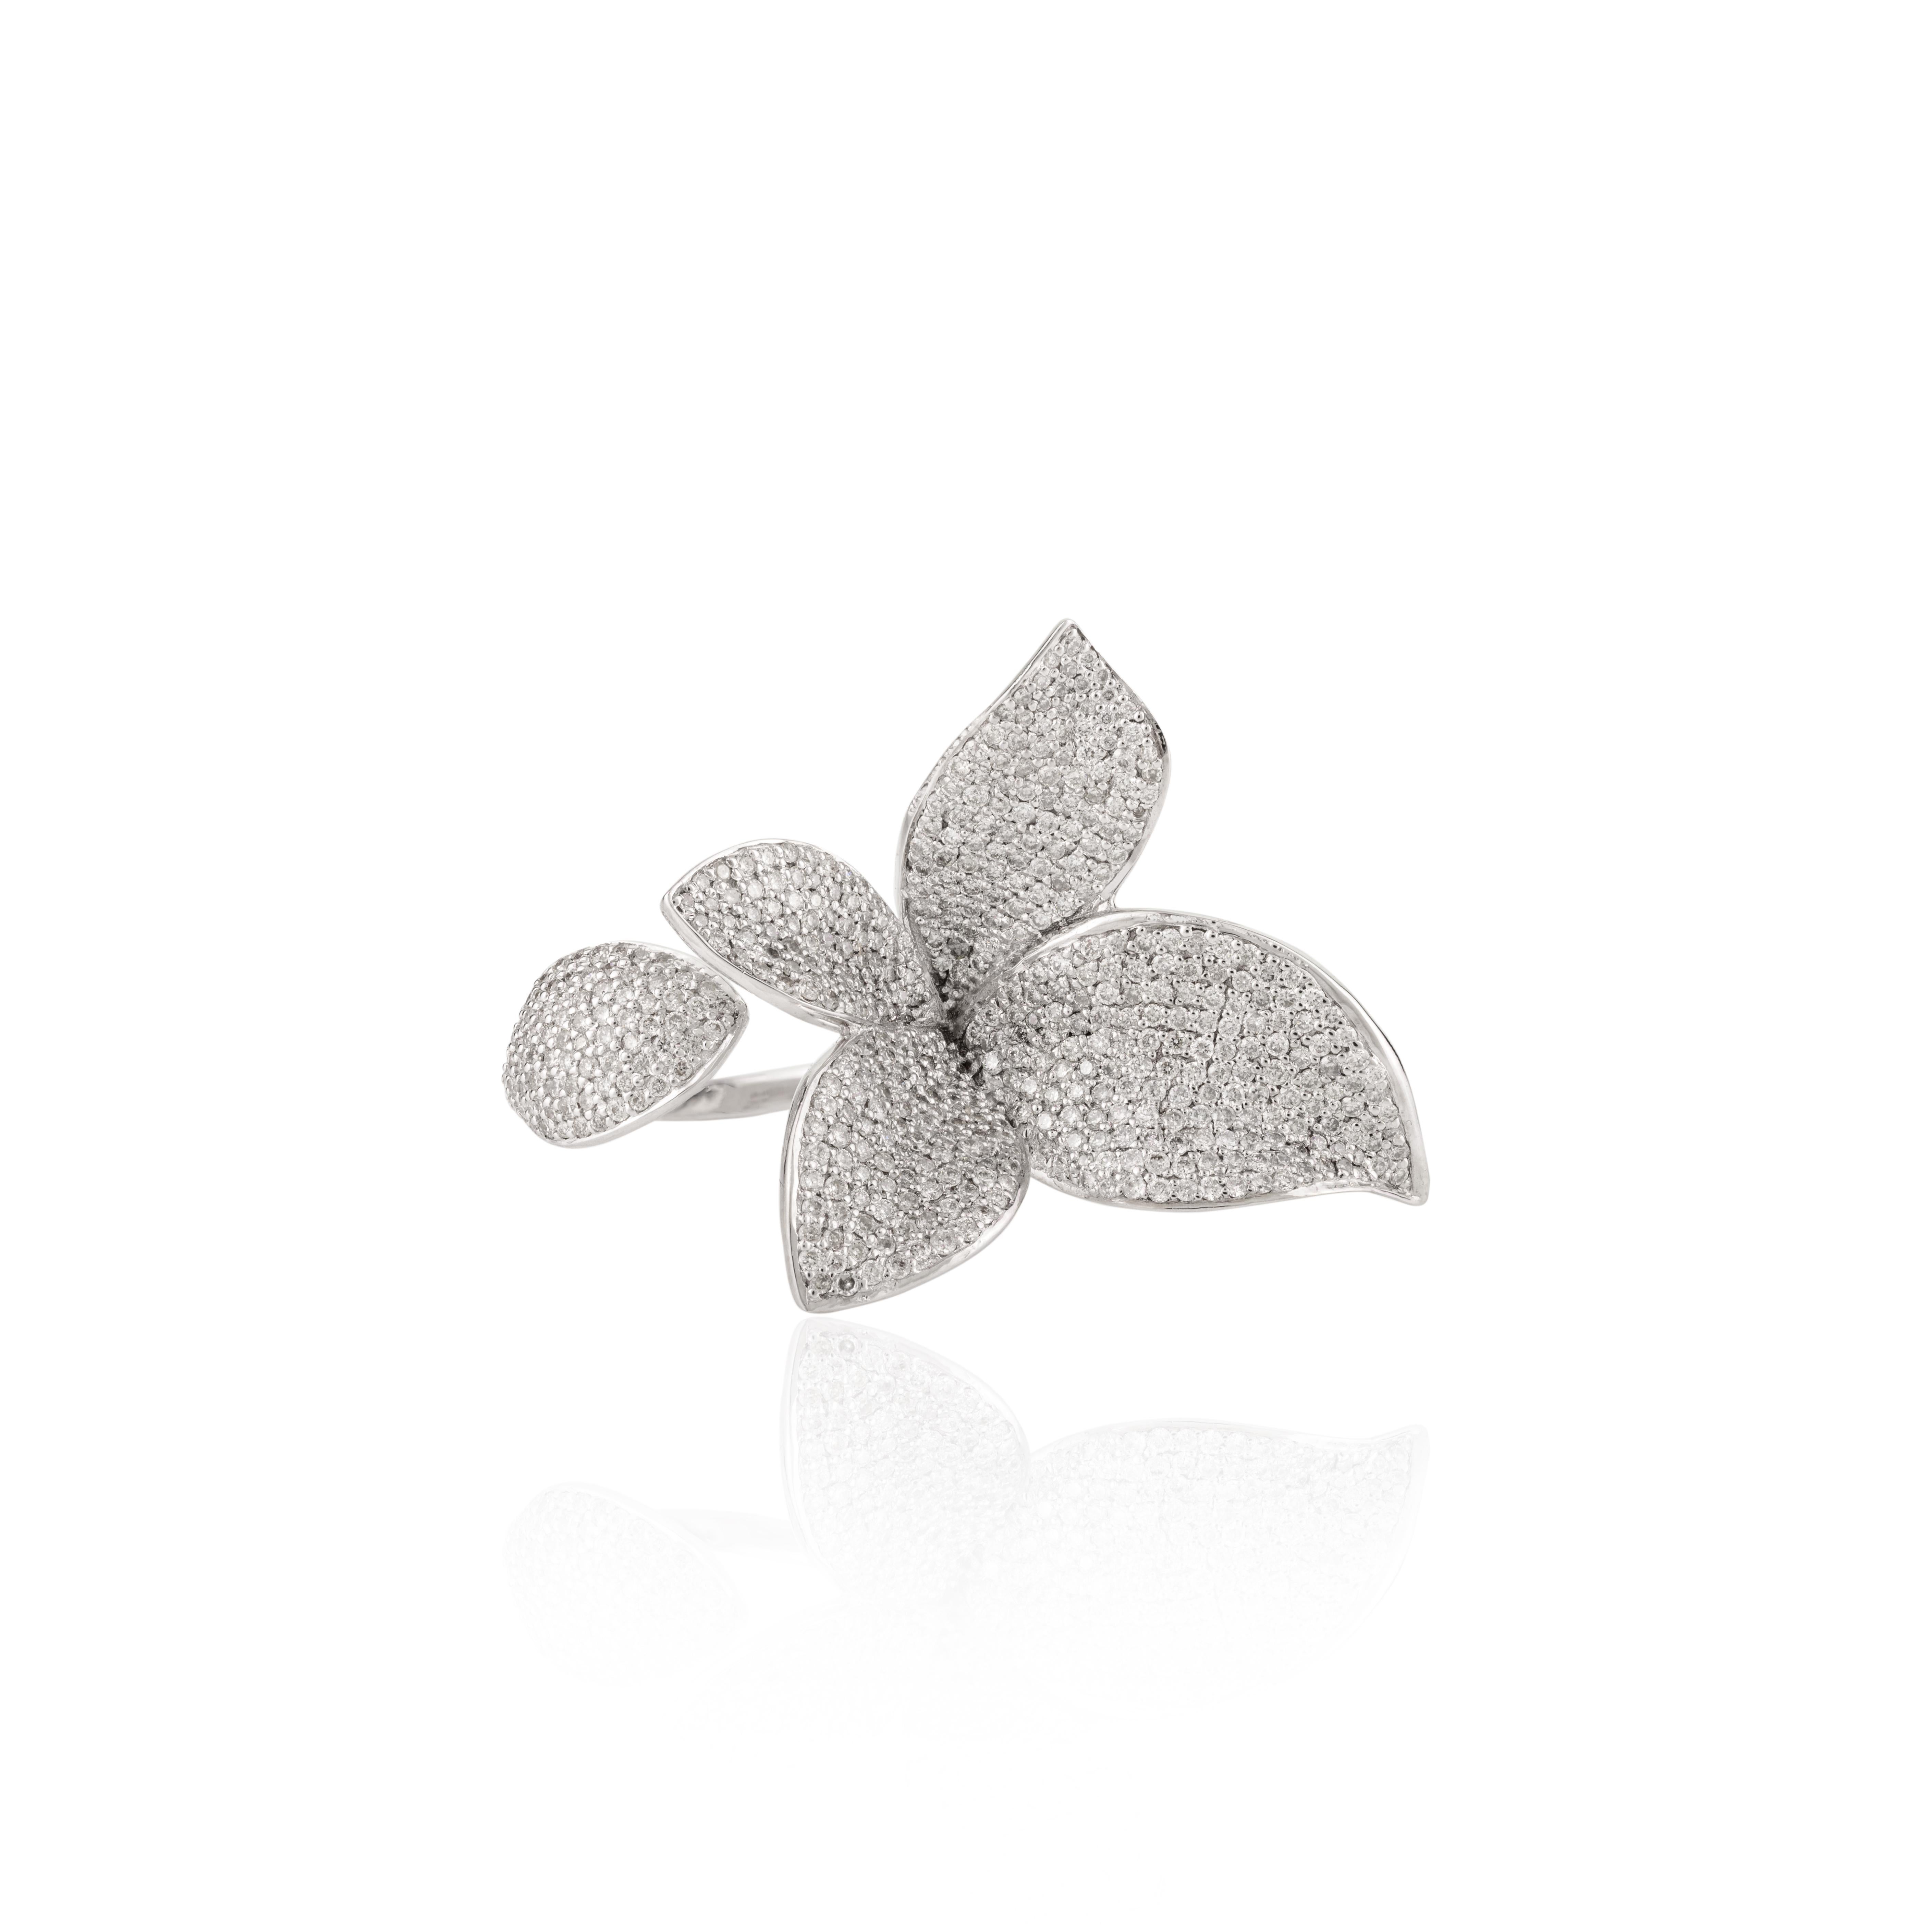 For Sale:  Designer 2 Carat Diamond Flower Cocktail Ring in 18k White Gold for Women 9